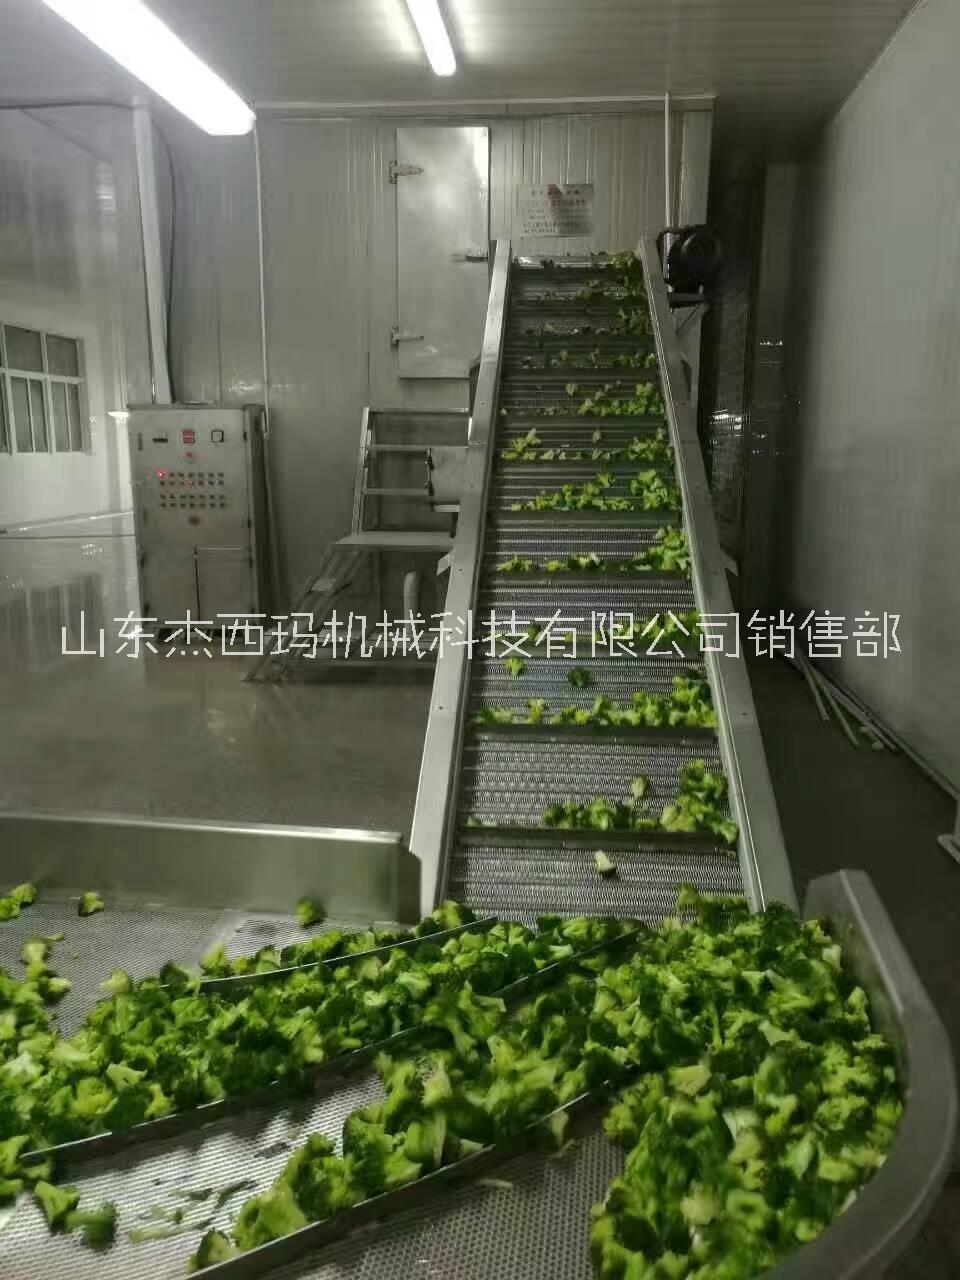 潍坊市清洗机  蔬菜清洗机 水果清洗机厂家清洗机  蔬菜清洗机 水果清洗机